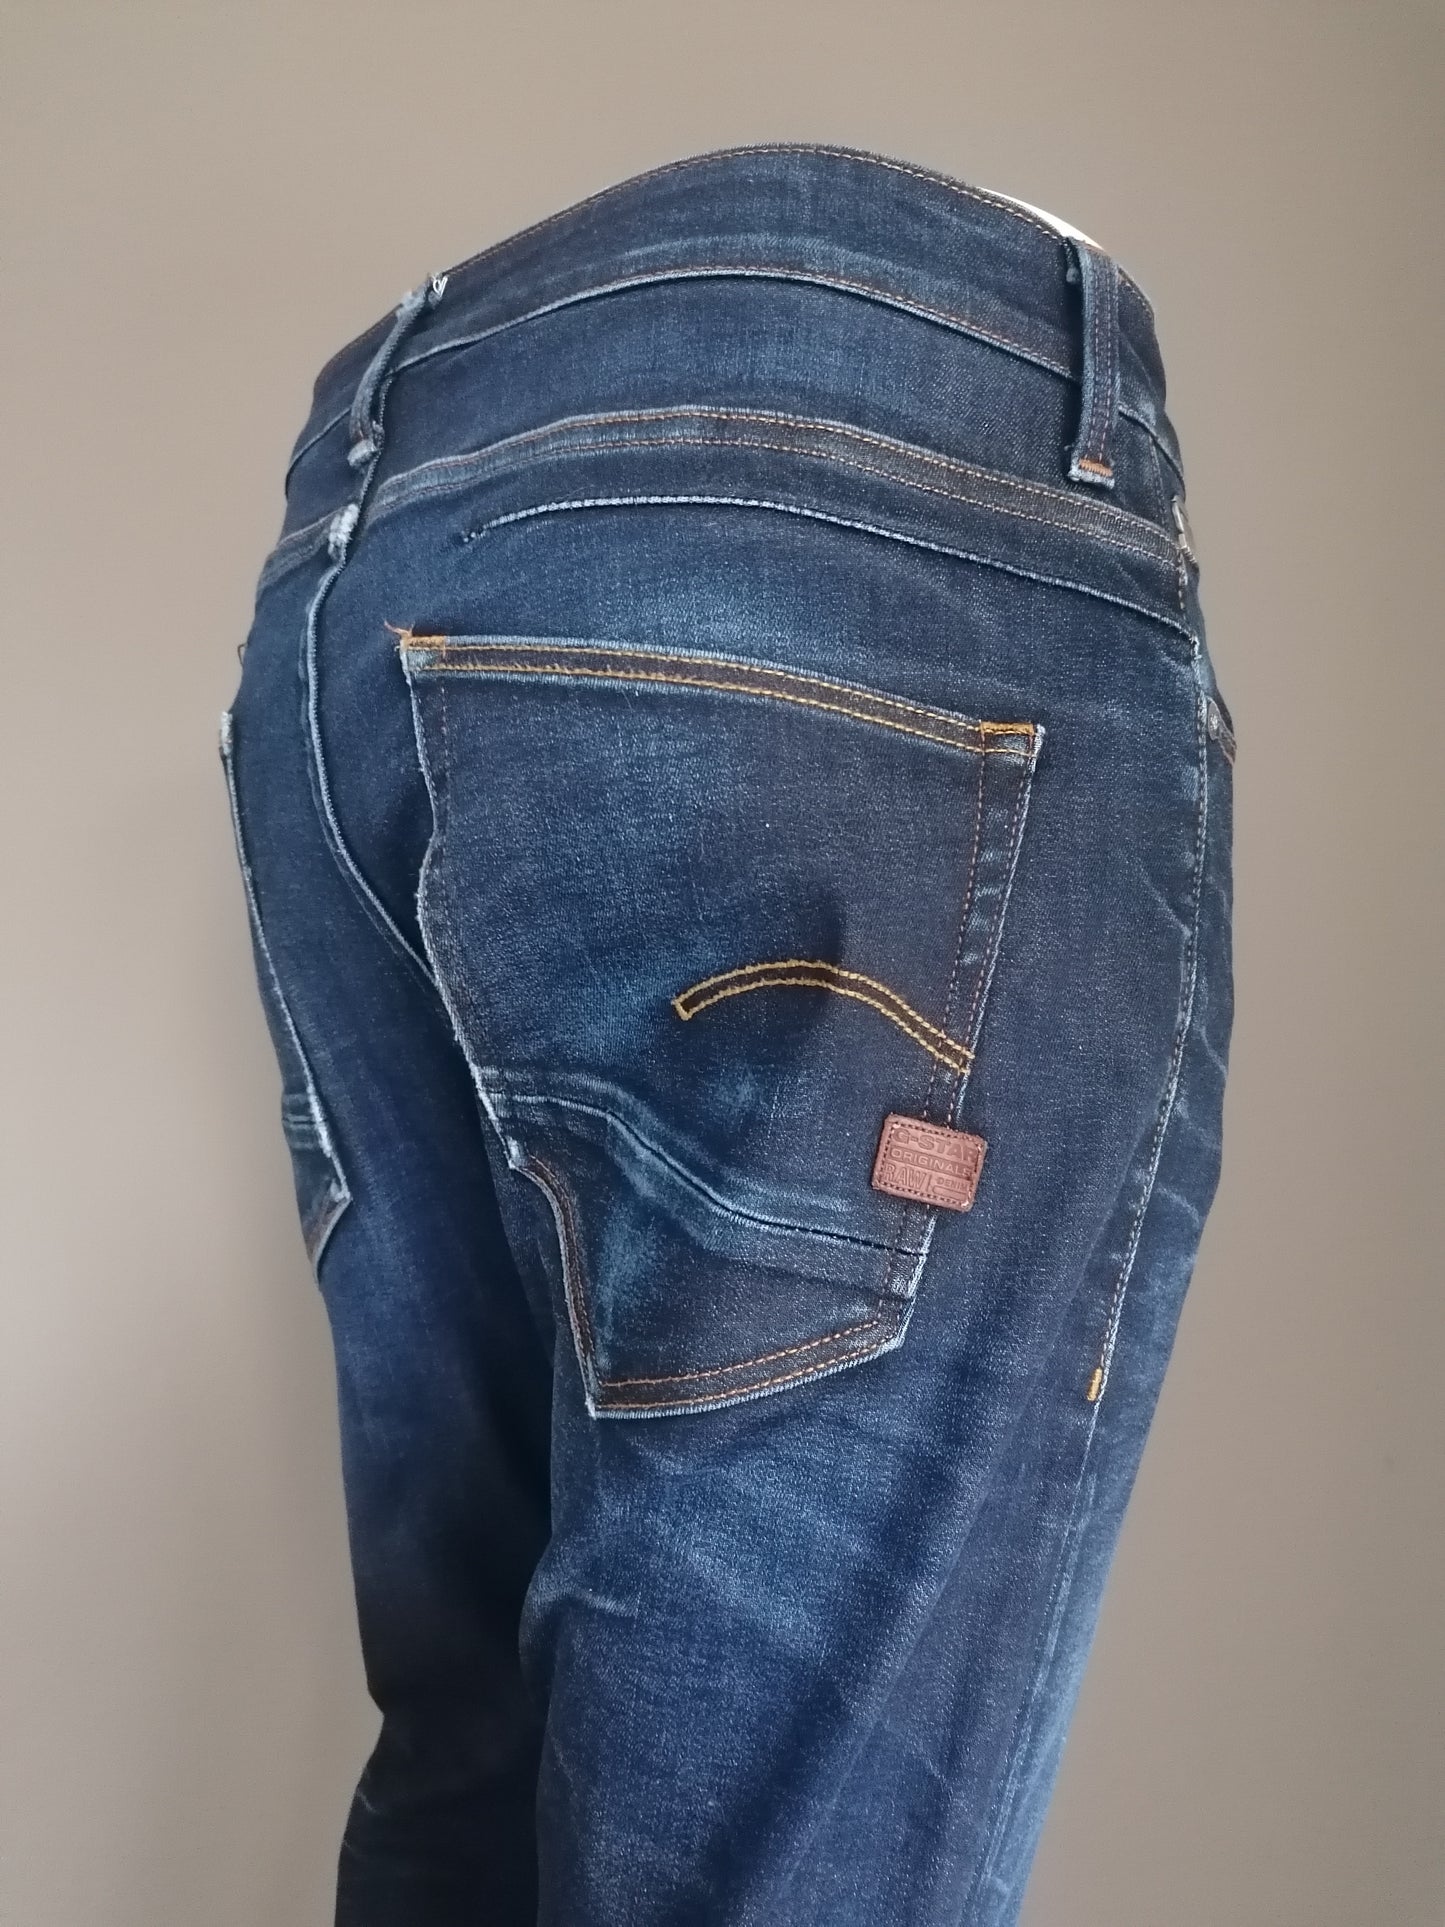 G-Star RAW jeans. Donker Blauw gekleurd. Maat W35 - L30. Slim / stretch. Type D-Shaq.